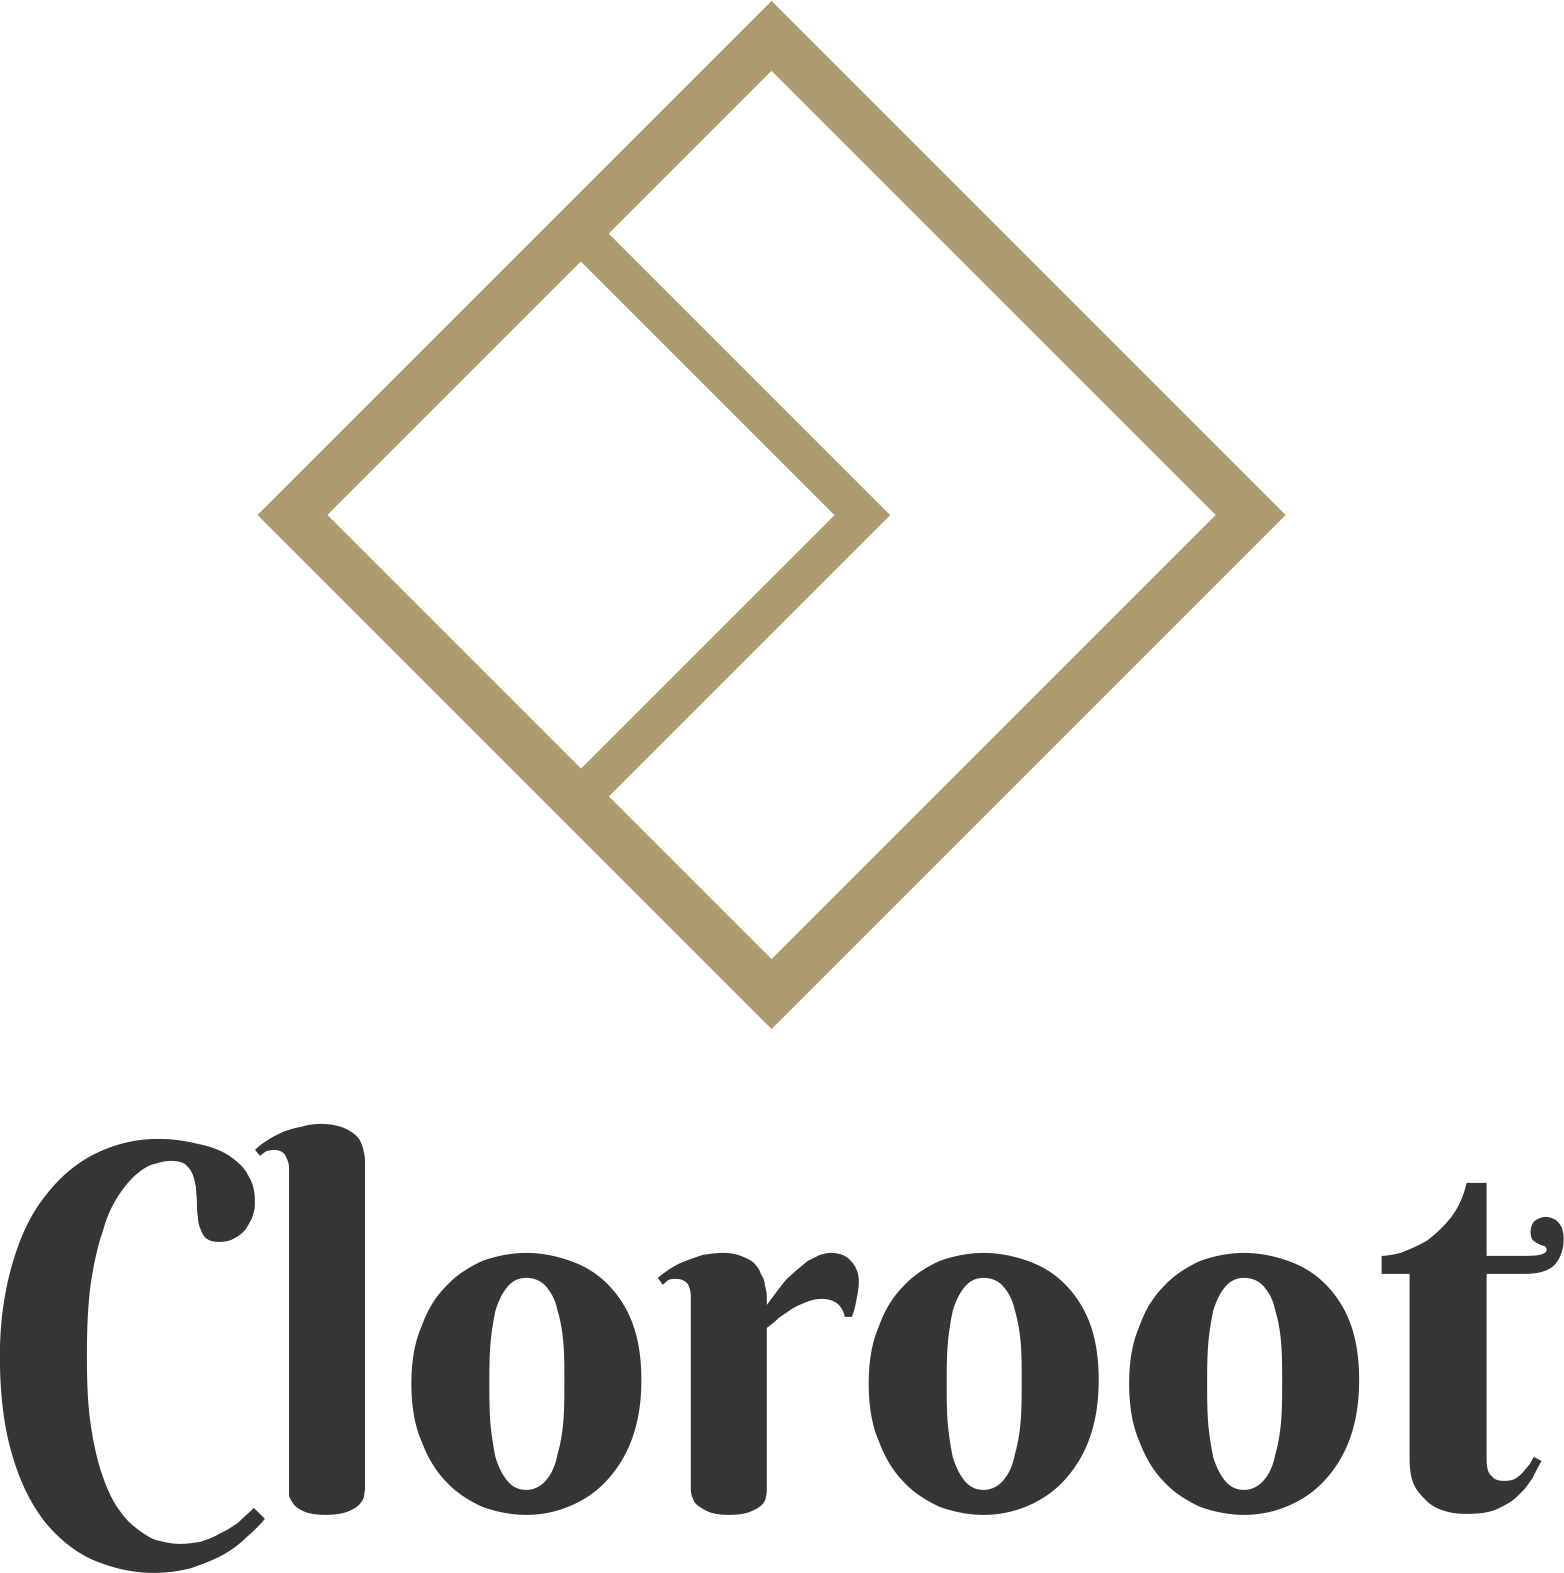 Cloroot